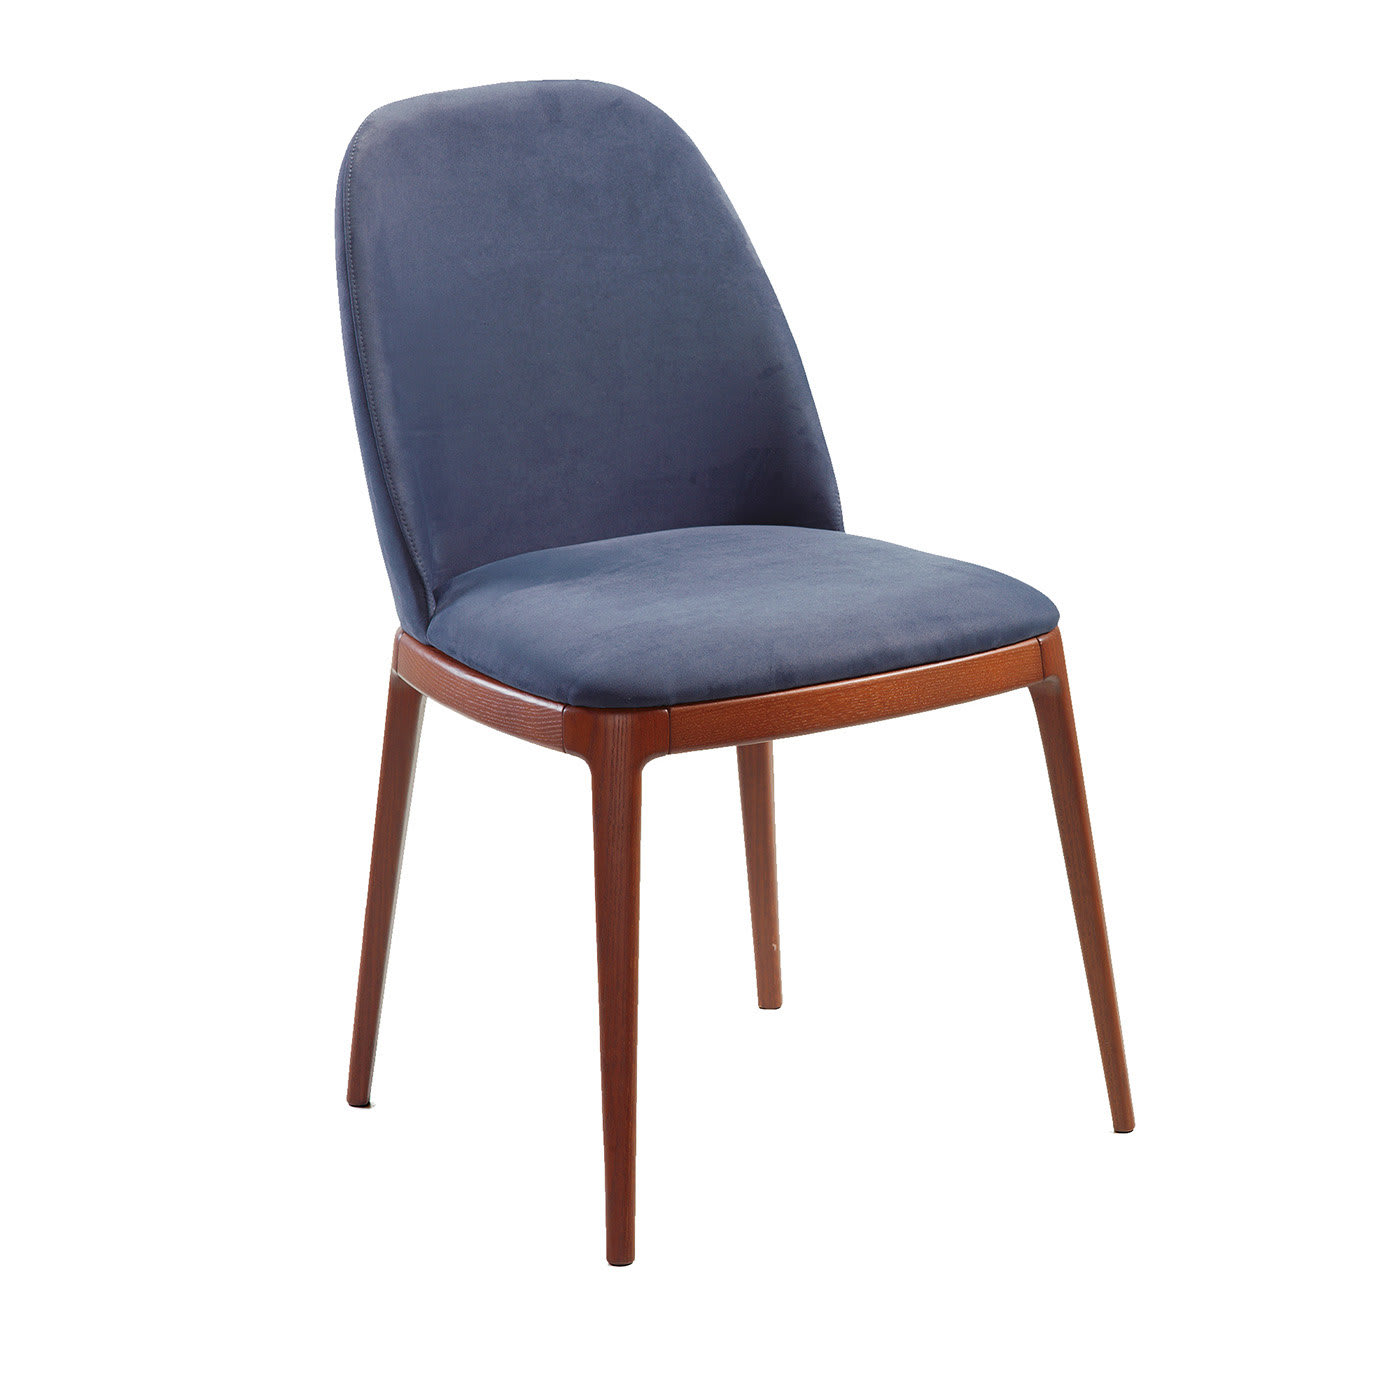 Breganze Blue Chair - Trevisan Asolo